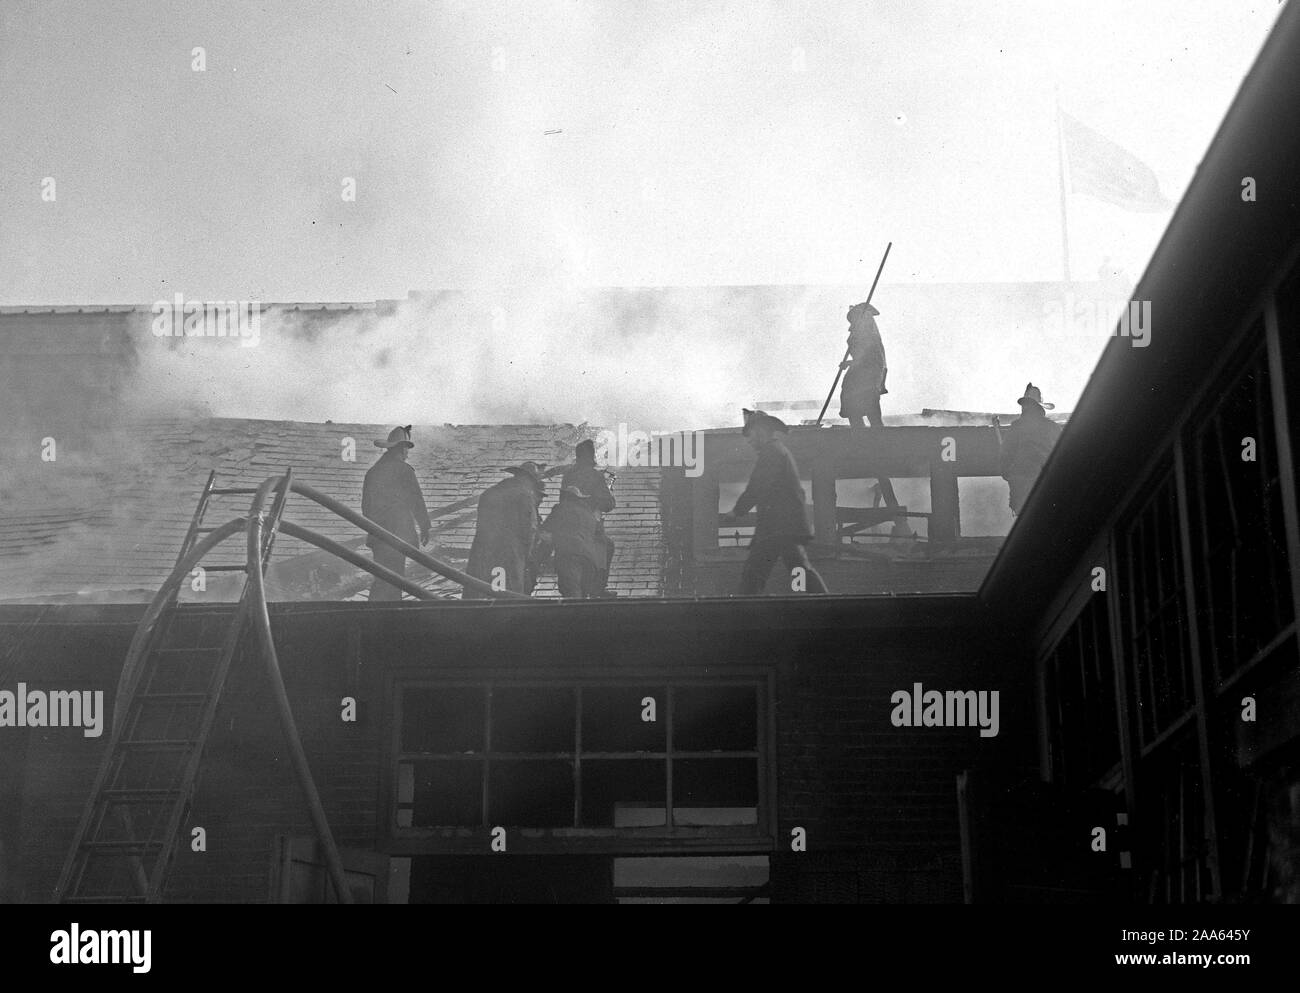 Début des années 1900, pompiers - Pompiers combattre le feu ca. 1914-1918 Banque D'Images